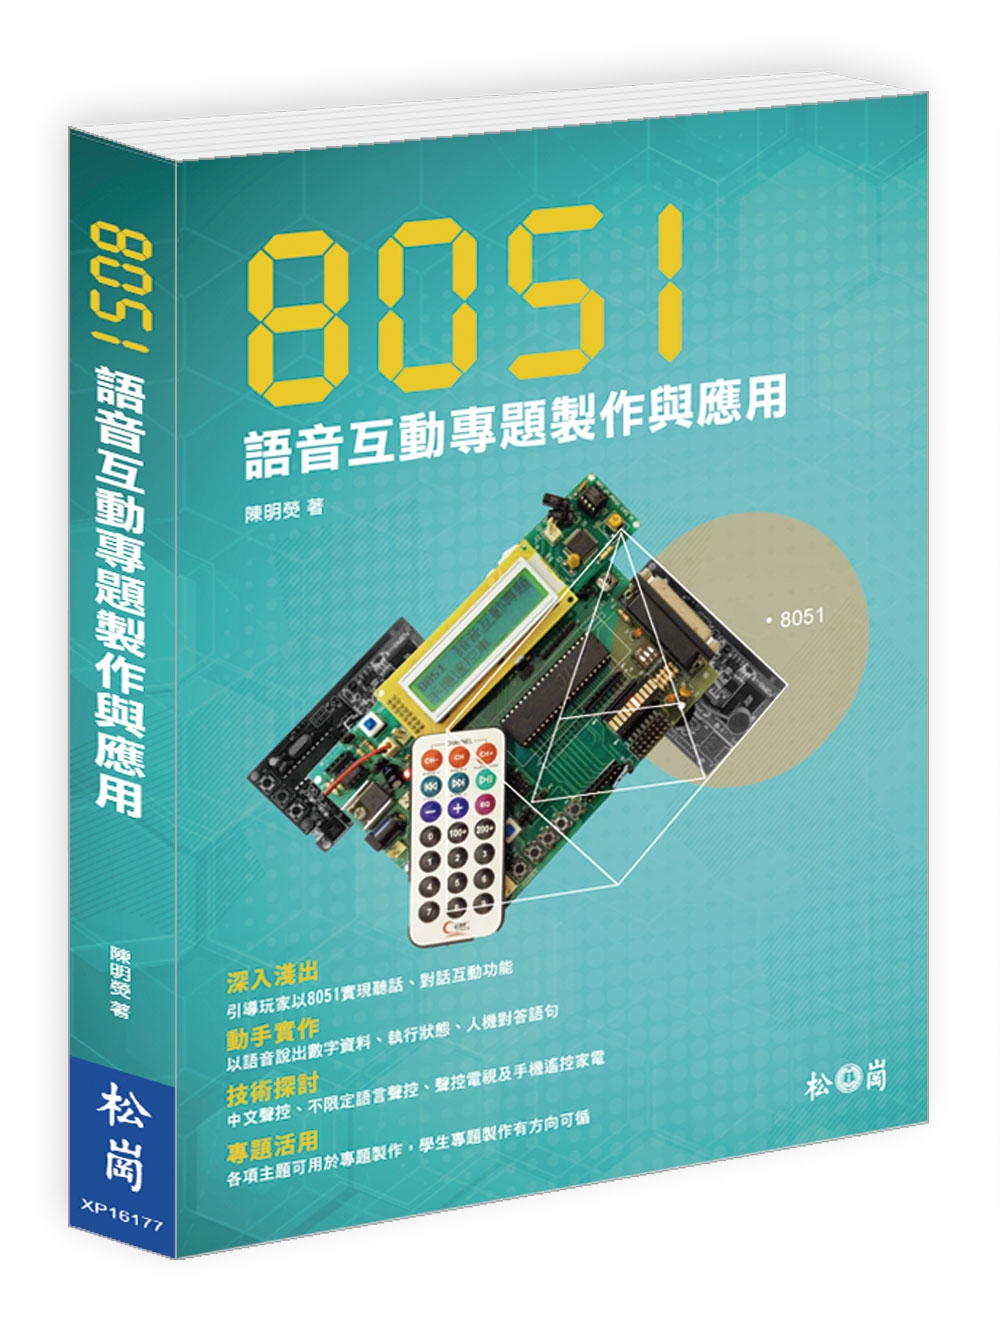 8051語音互動專題製作與應用(...